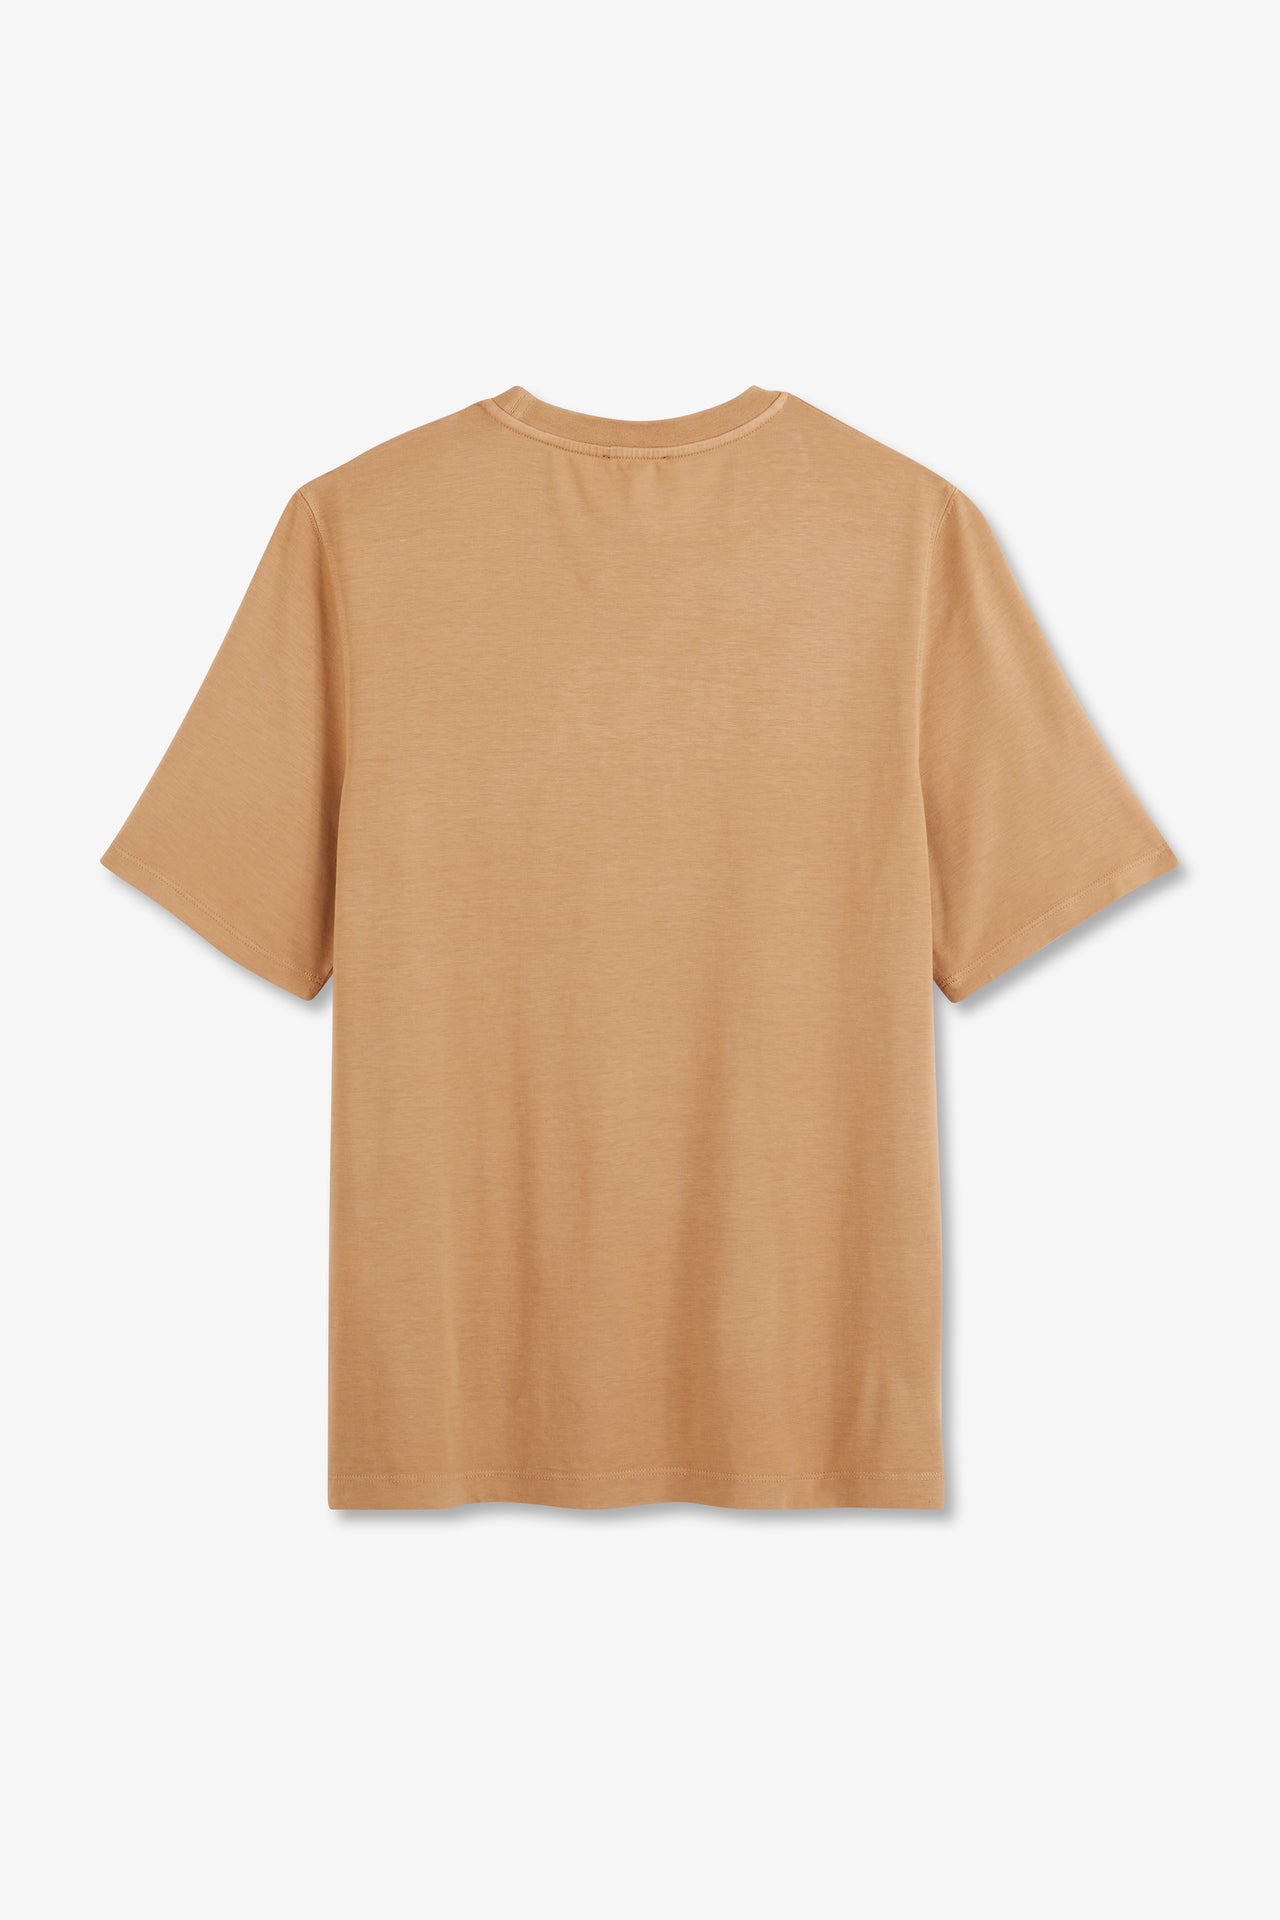 T-shirt beige uni à manches courtes